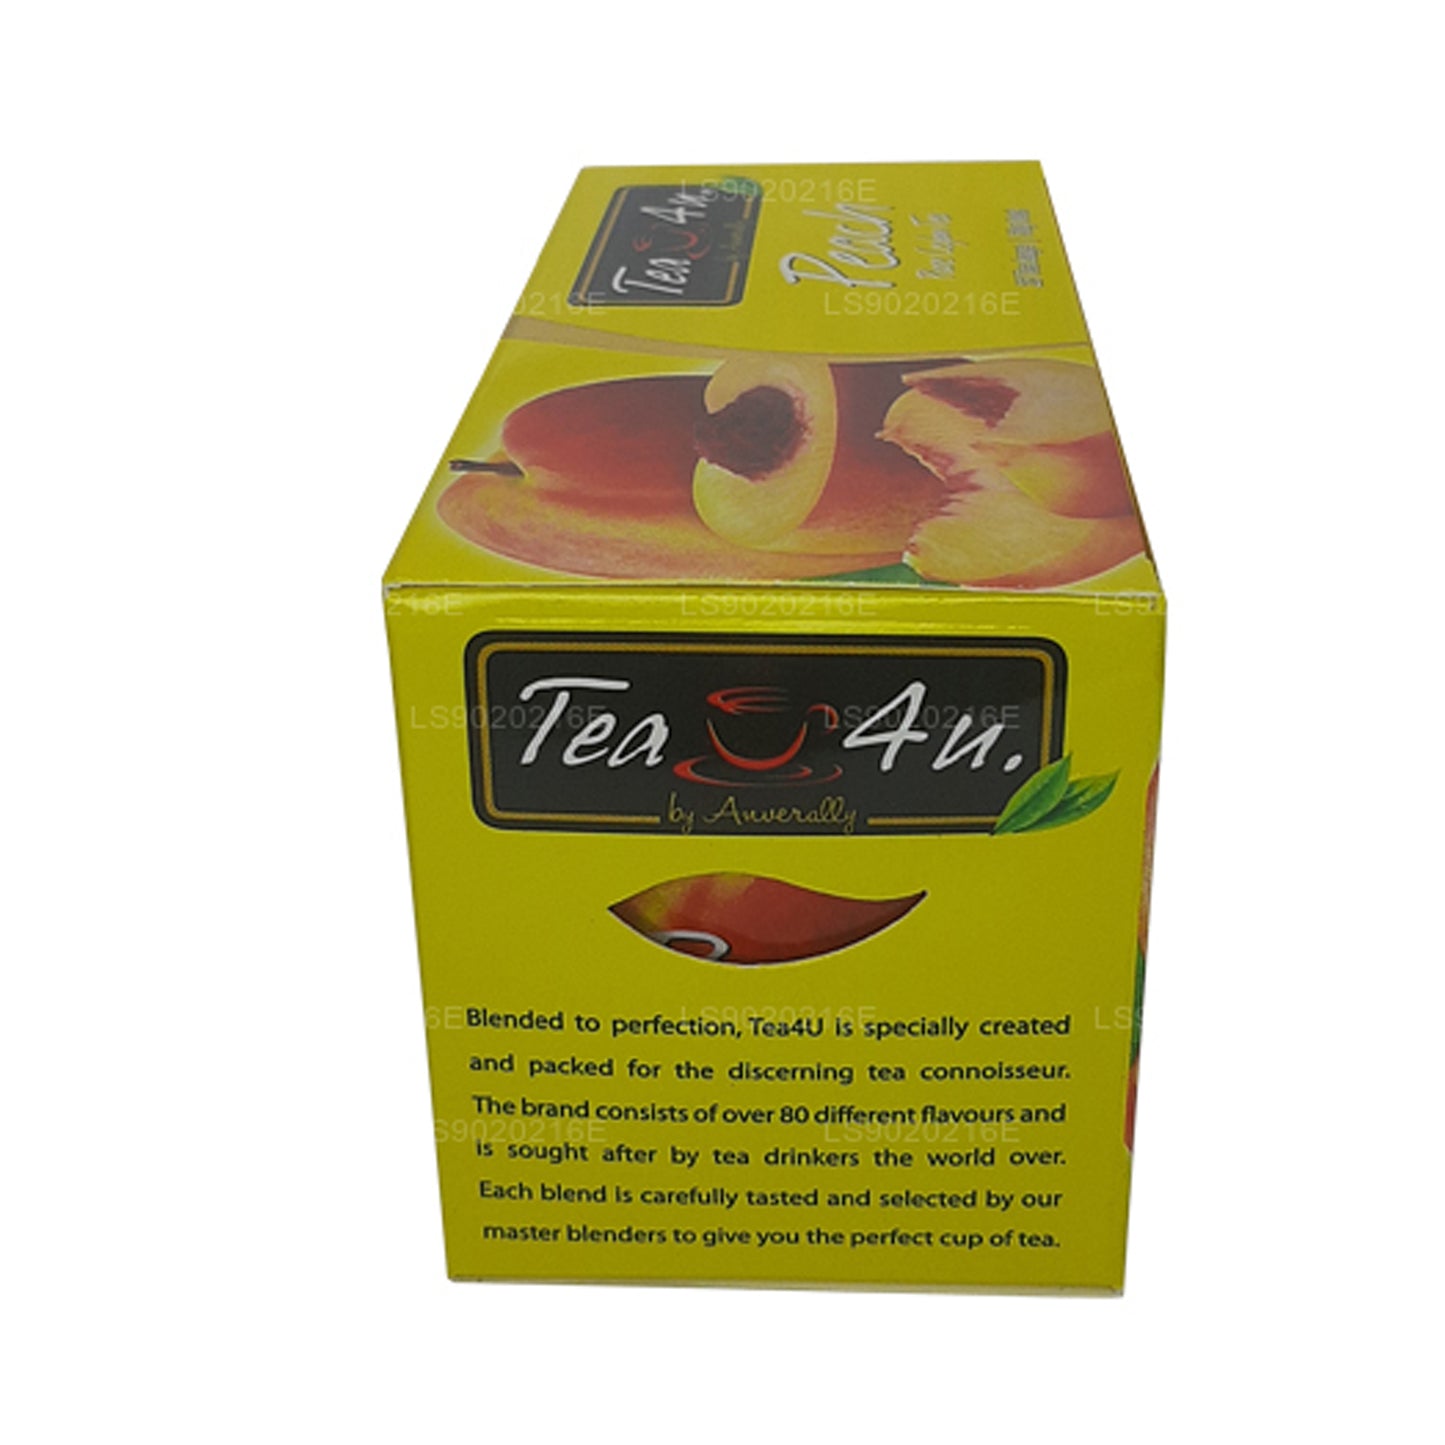 Tea4U Peach Tea (50g) 25 Tea Bags